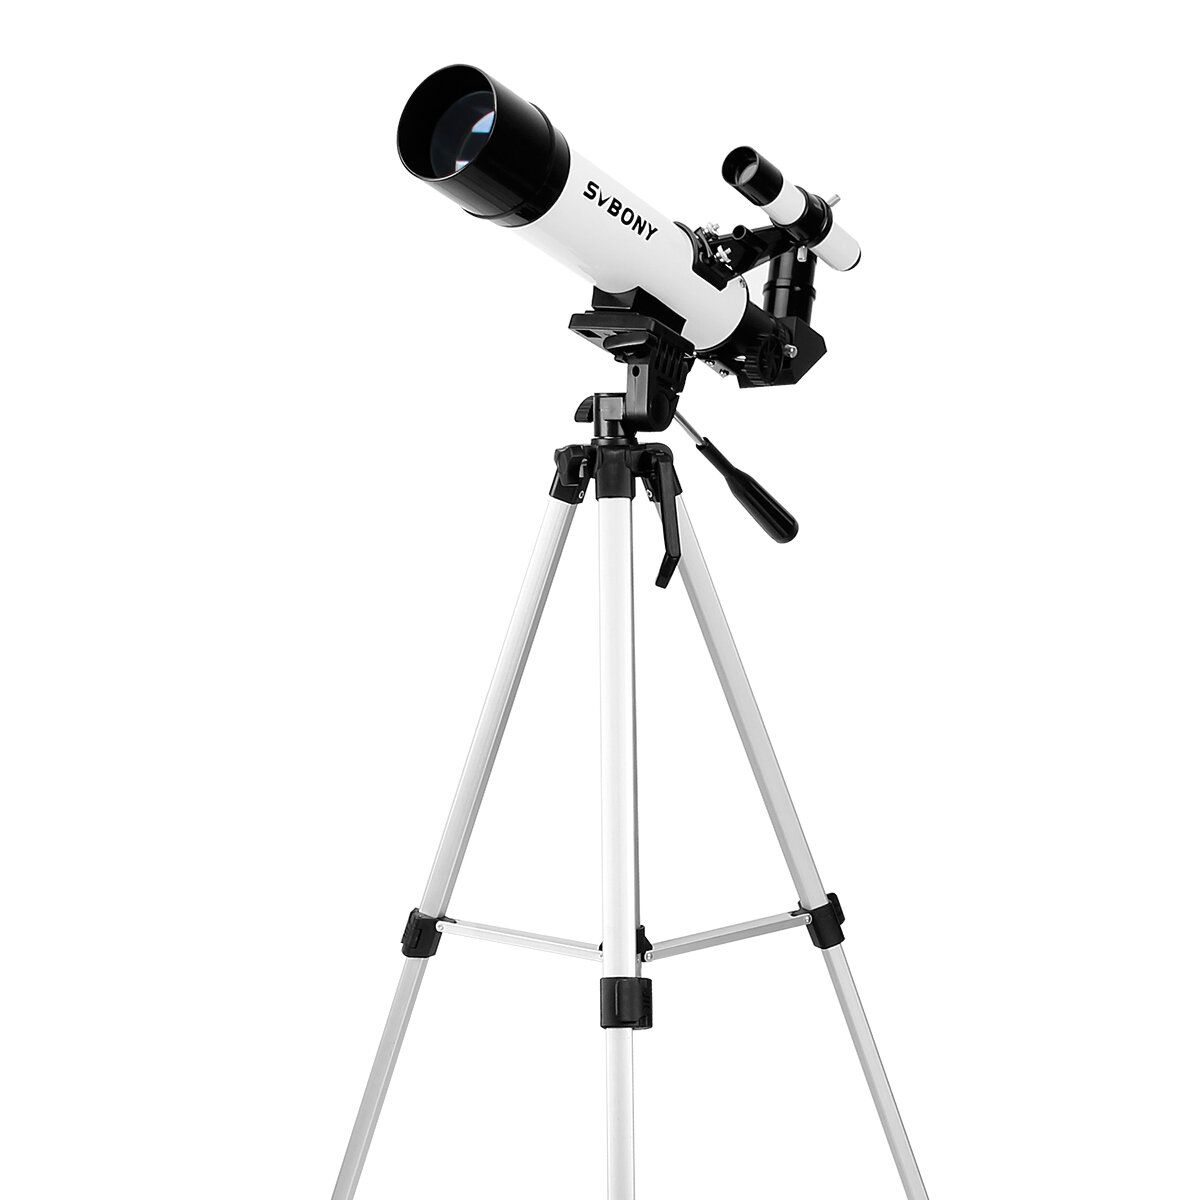 SVBONY SV25 Telescopio Astronomico 3X Barlow lente Birds Vision Mirino Ottico Cannocchiale Monoculare con Treppiede